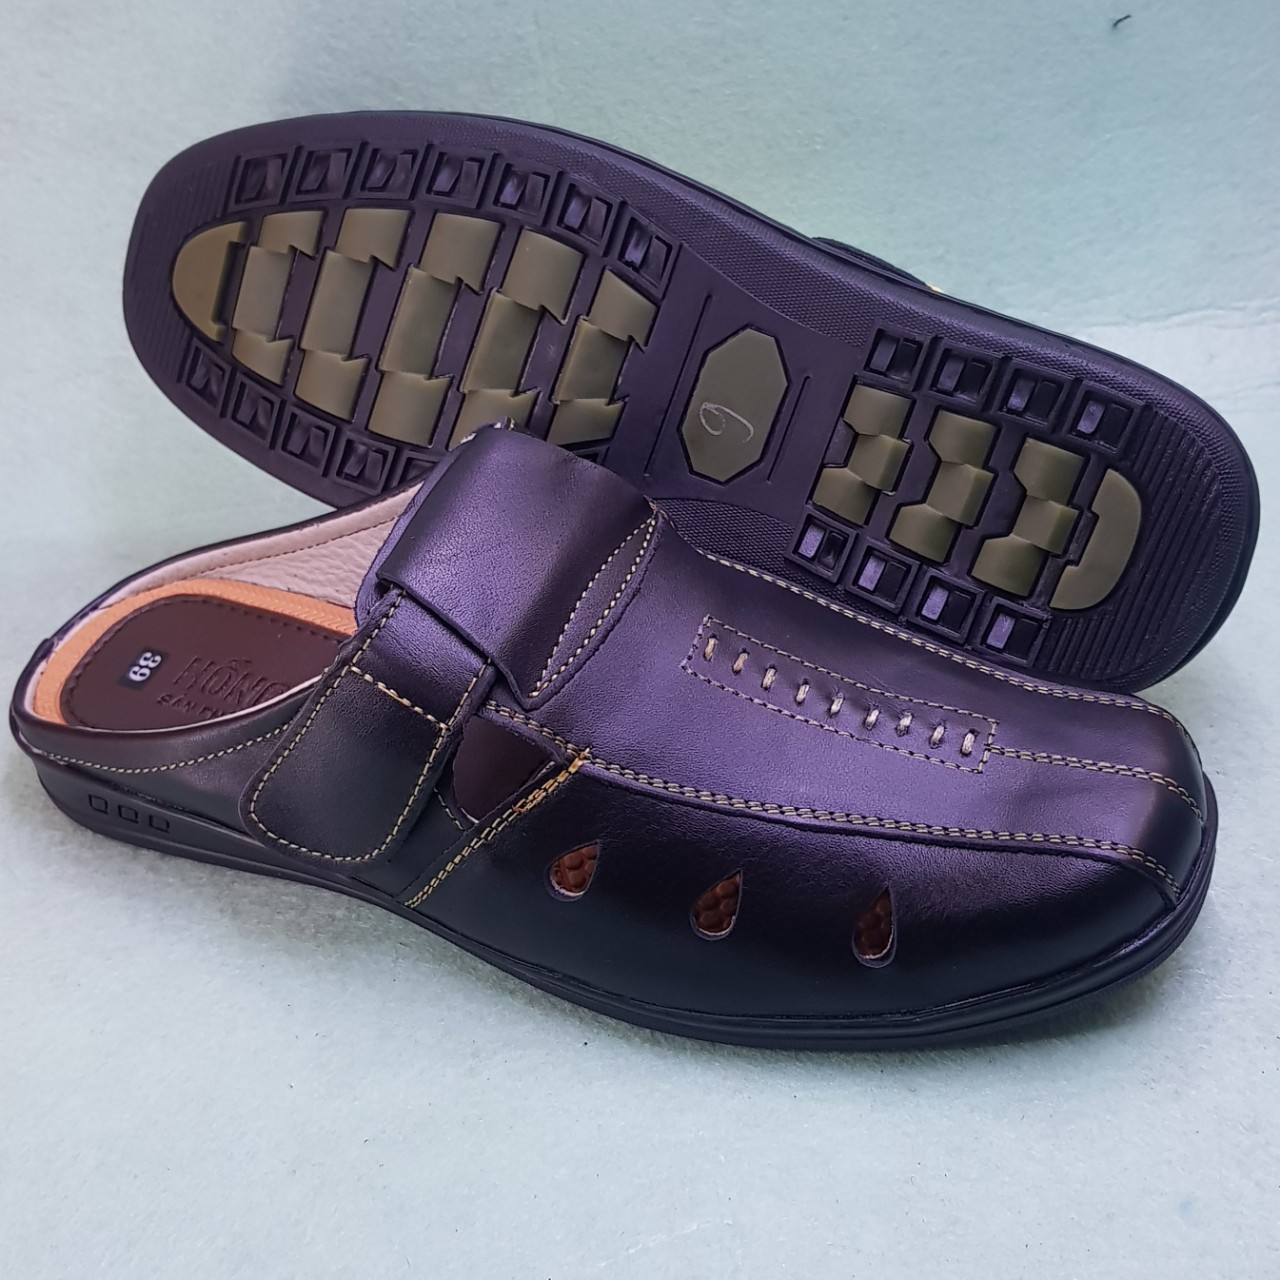 điạ chỉ chuyên phân phối bán buôn bỏ sỉ giày sabo nam hàng cao cấp giá gốc tận xưởng, bán sỉ giày dép cho đại lý và chợ đầu mối toàn quốc.